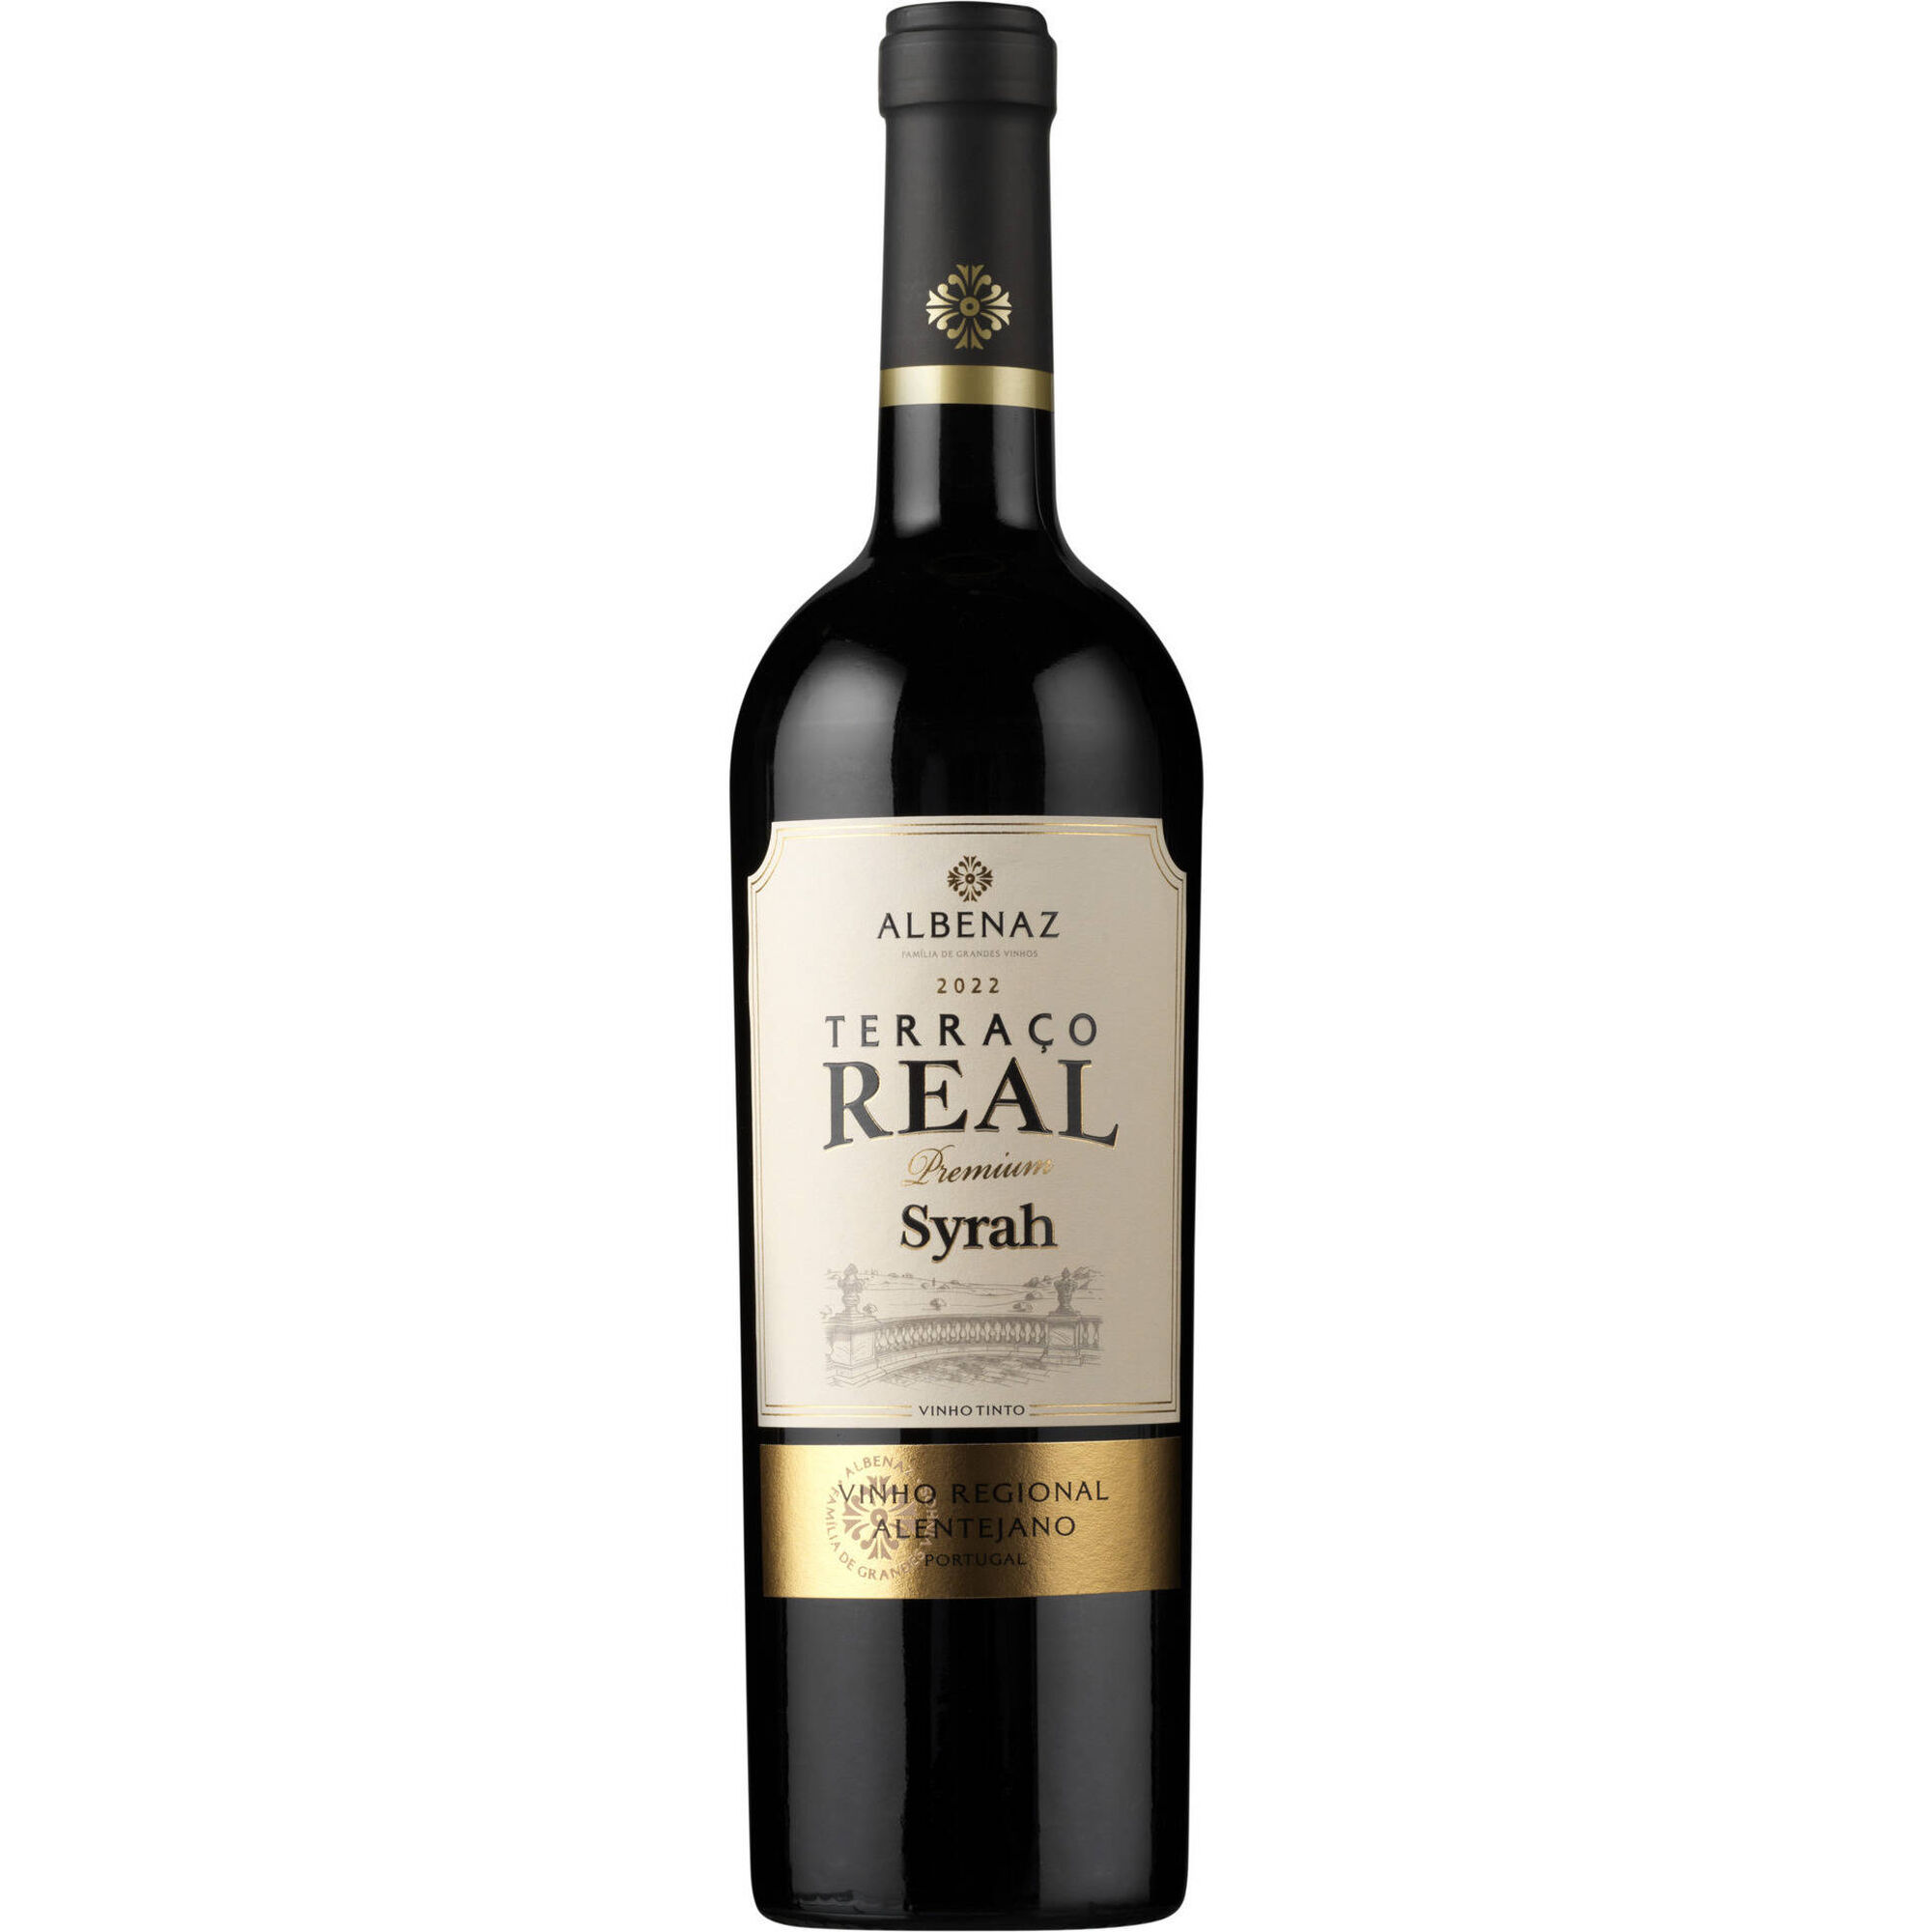 Albenaz Terraço Real Syrah Premium Regional Alentejano Vinho Tinto